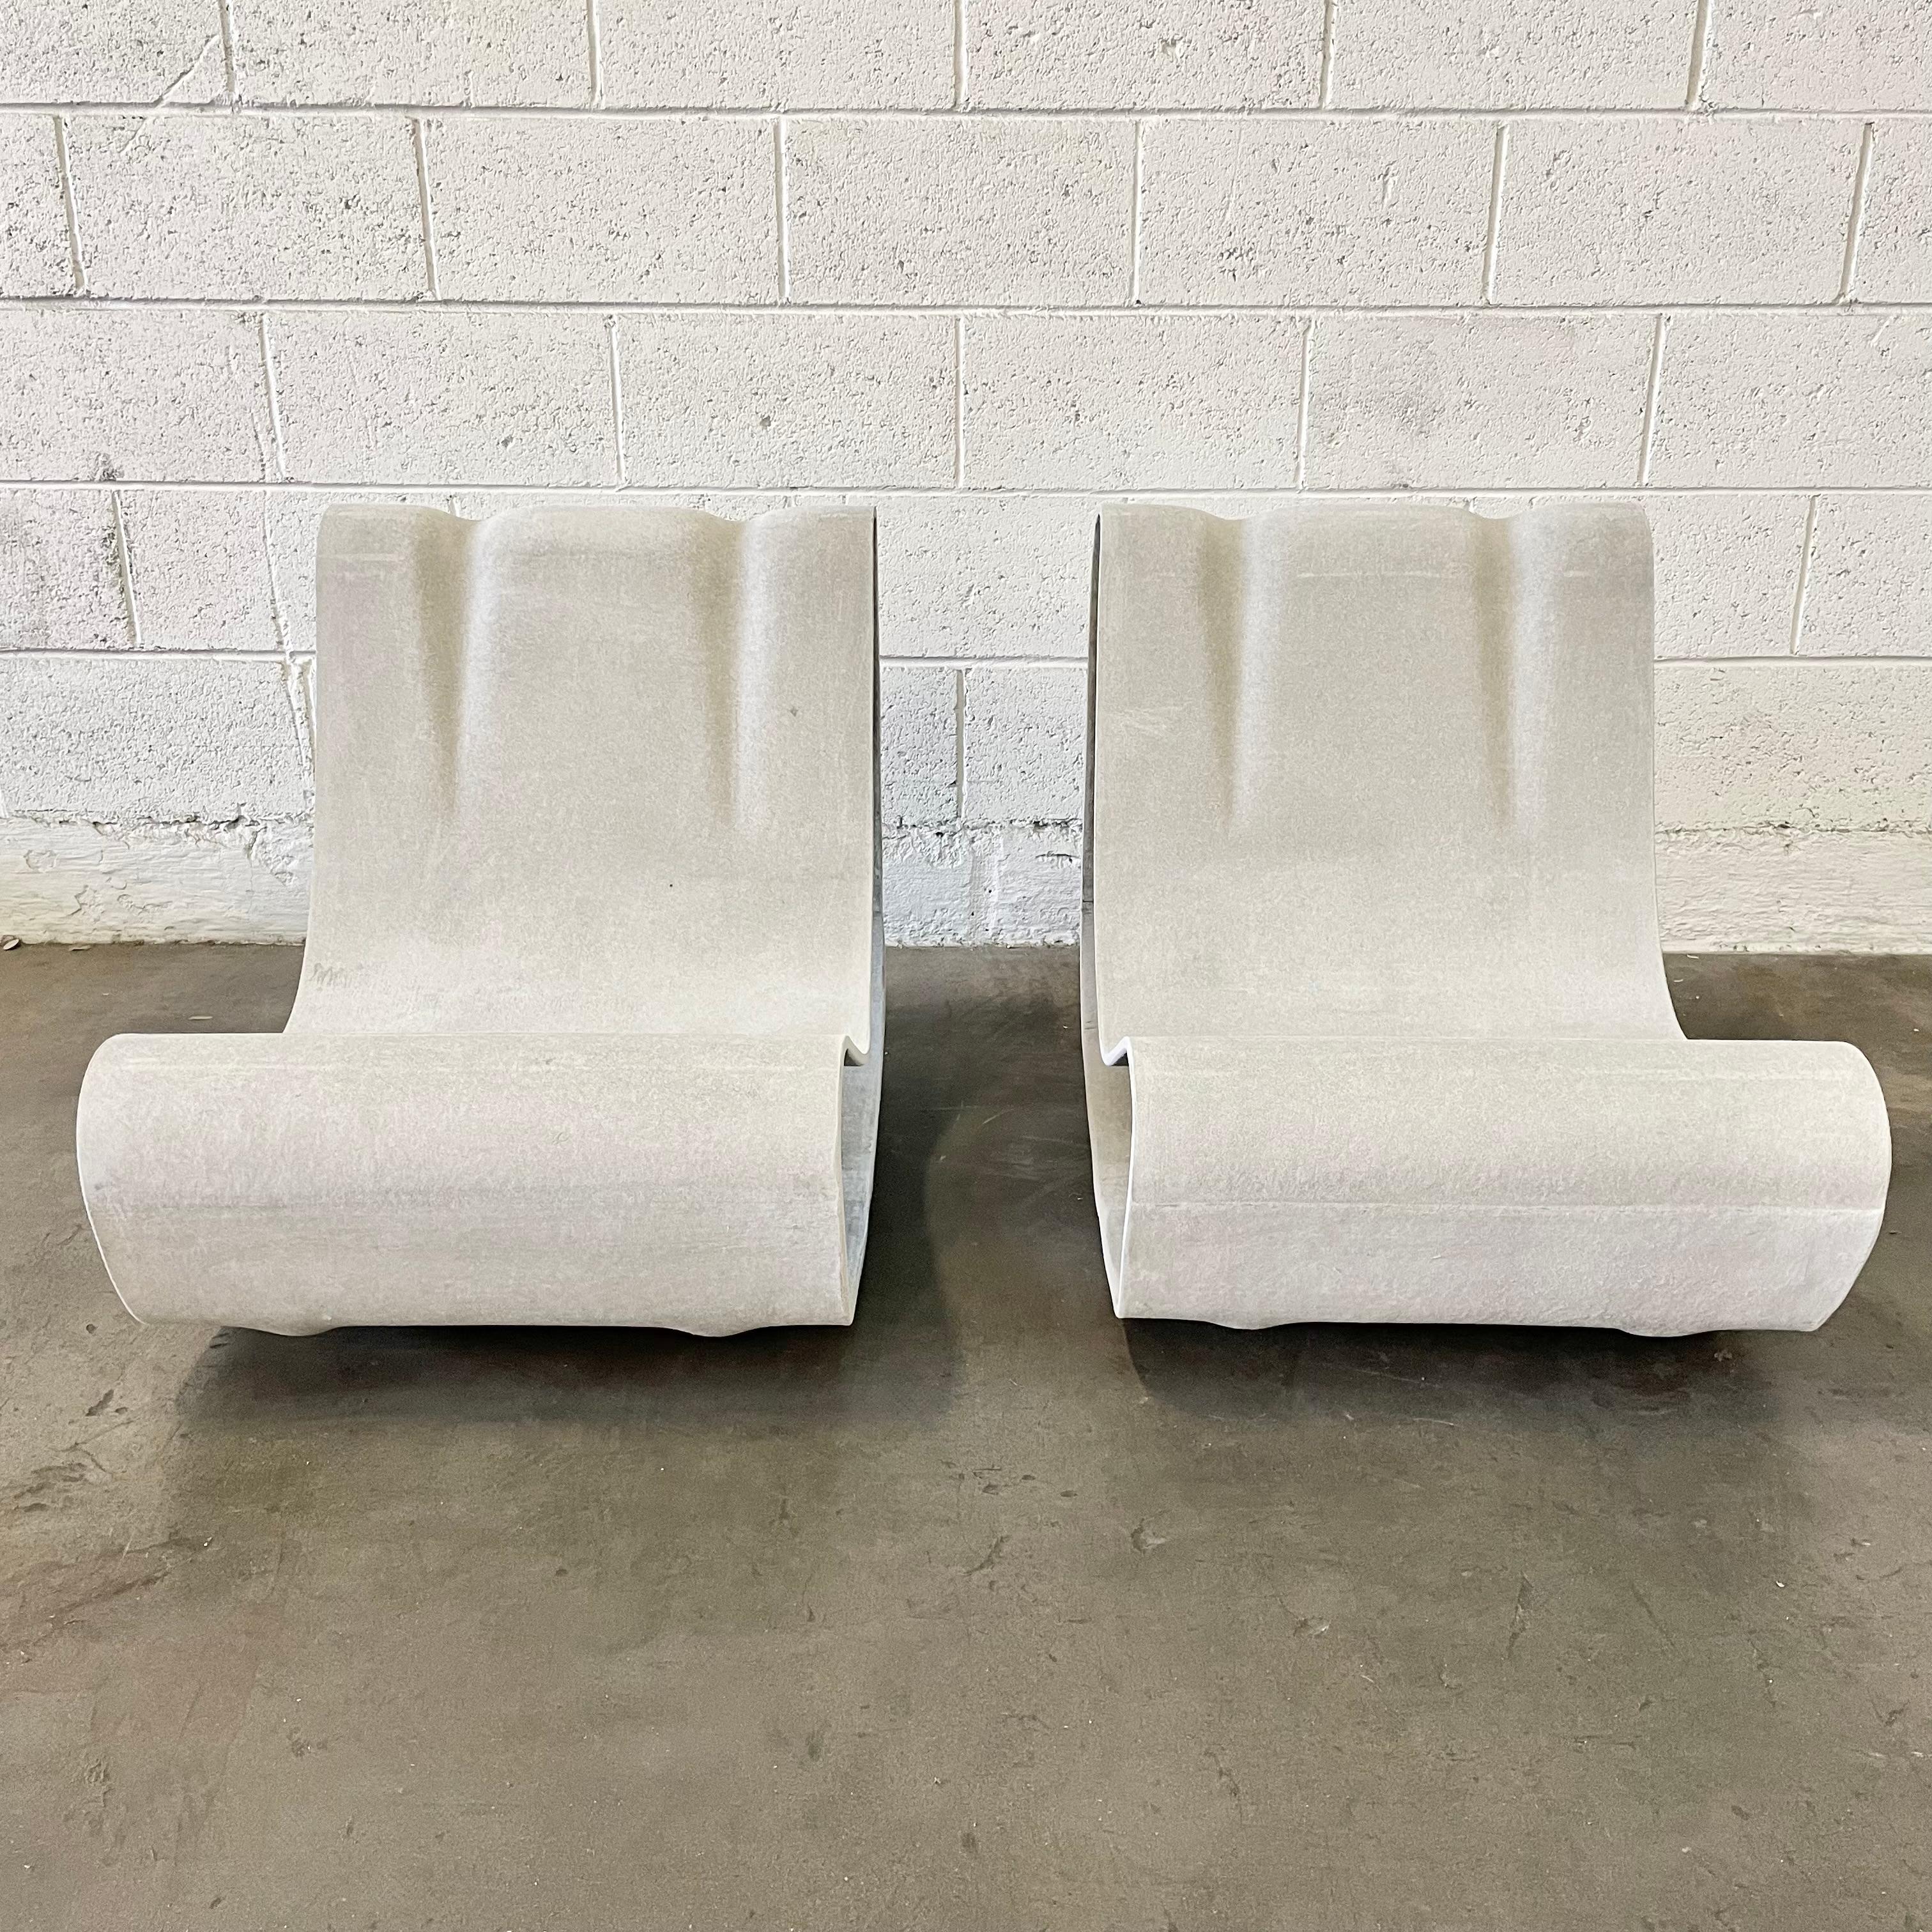 Fantastique paire de chaises en ciment du designer suisse Willy Guhl pour Eternit. État neuf. Fabriqué à la main en Suisse. Produit récemment. Le prix est fixé par paire. L'une des chaises les plus emblématiques jamais conçues.
 